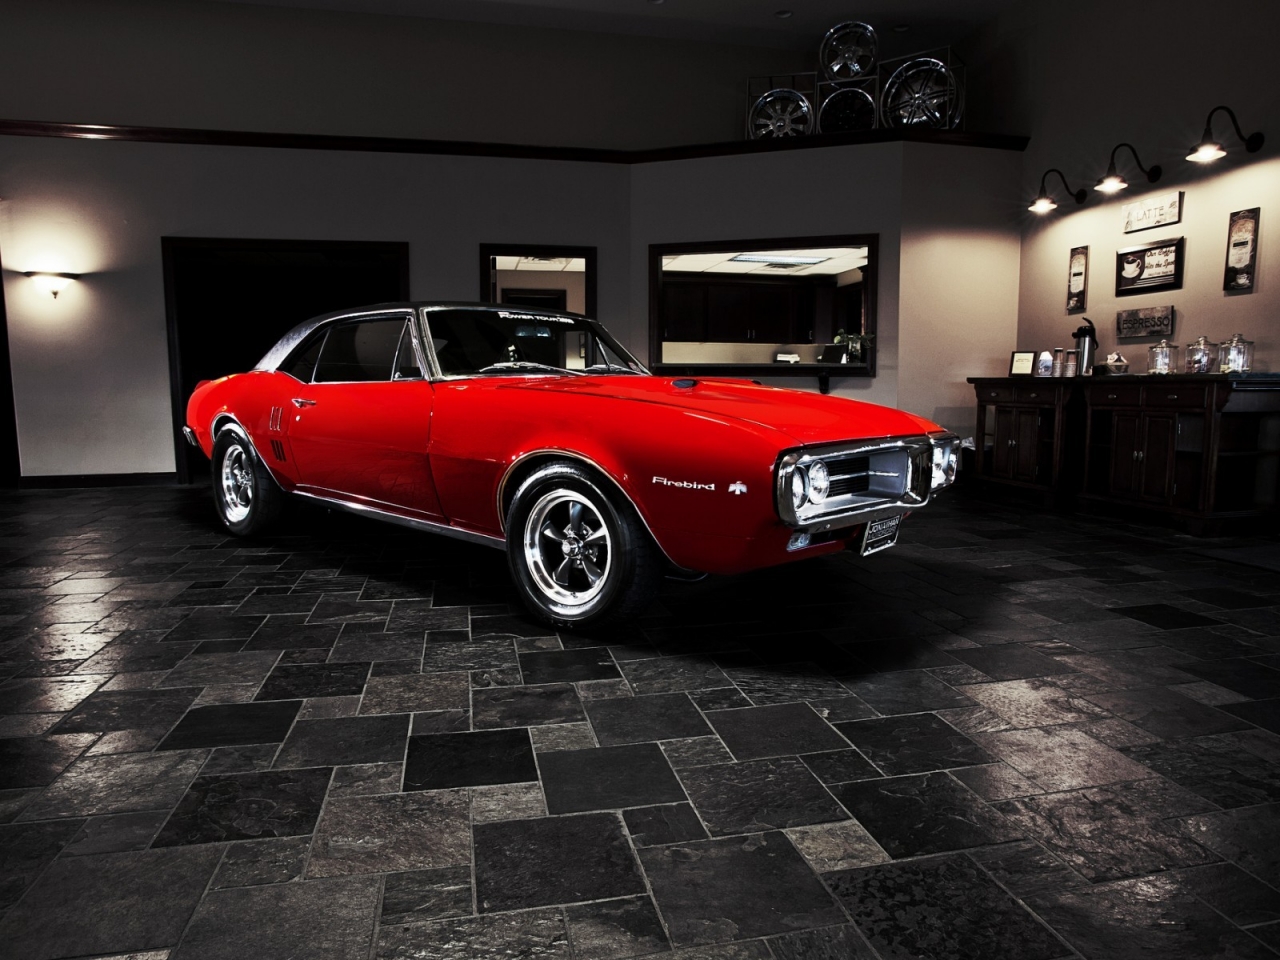 Pontiac Firebird 1967 for 1280 x 960 resolution